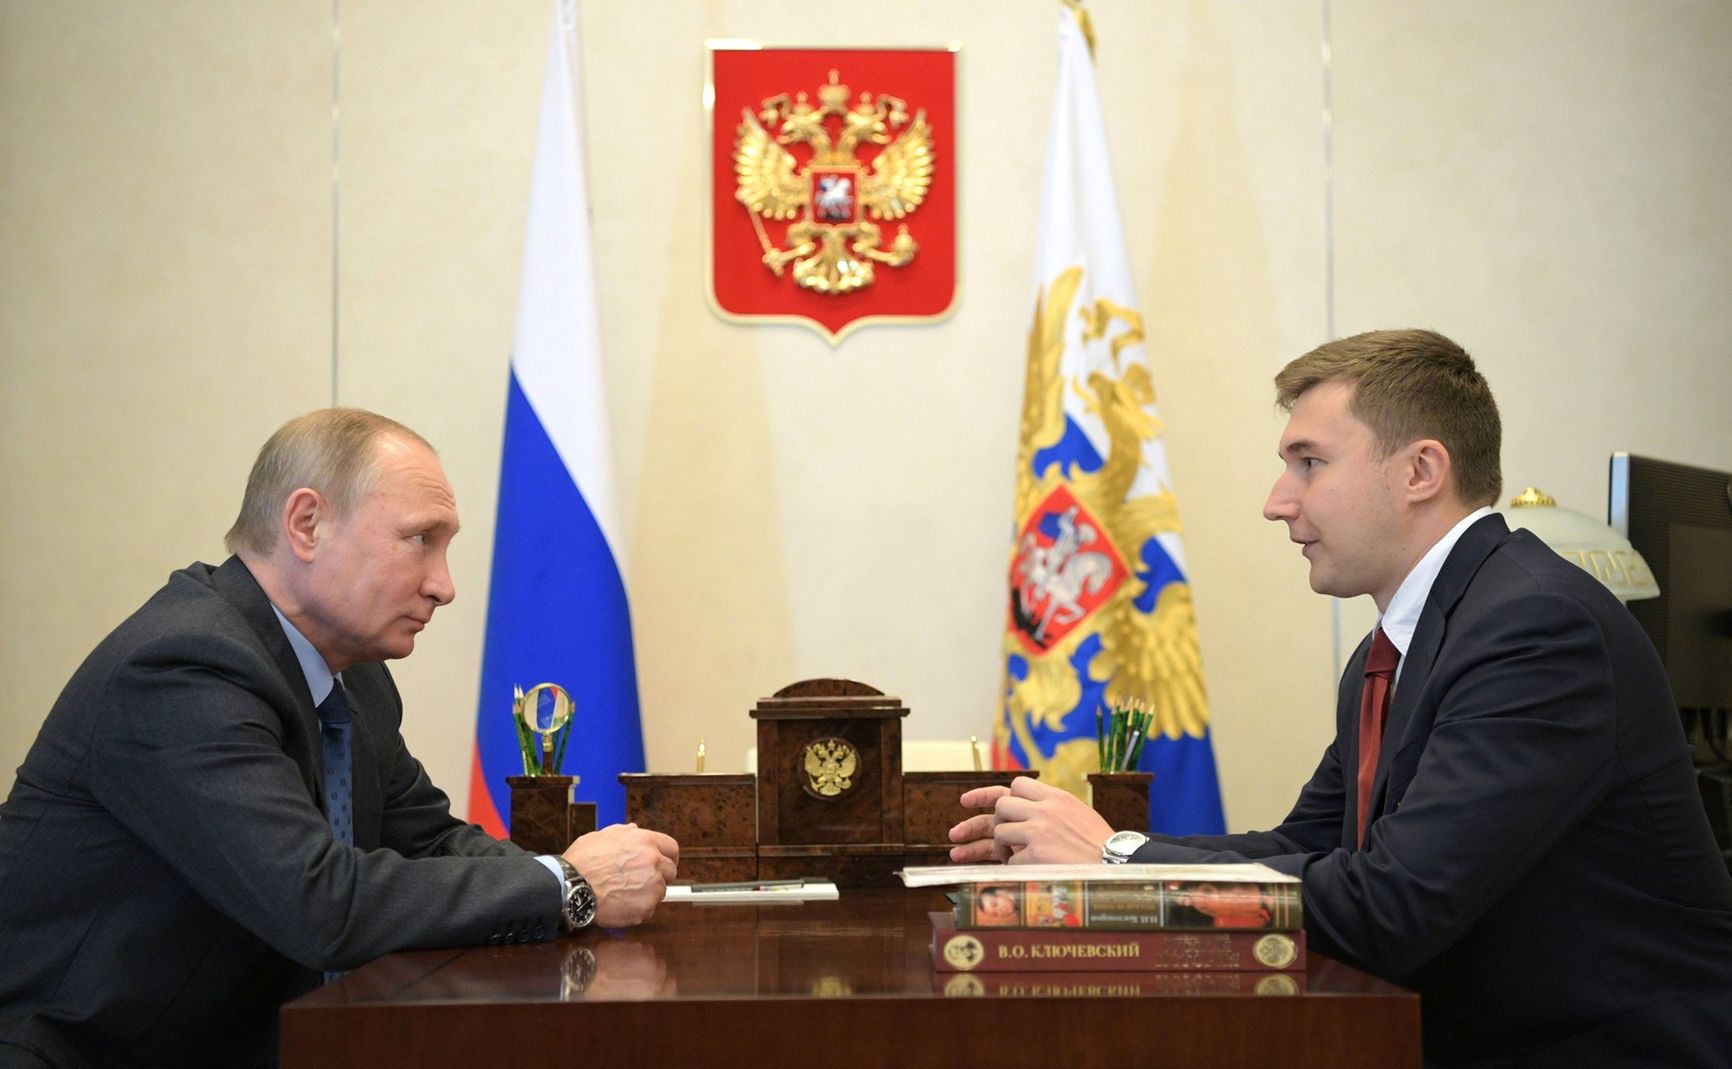 Sergey Karjakin being received by Putin